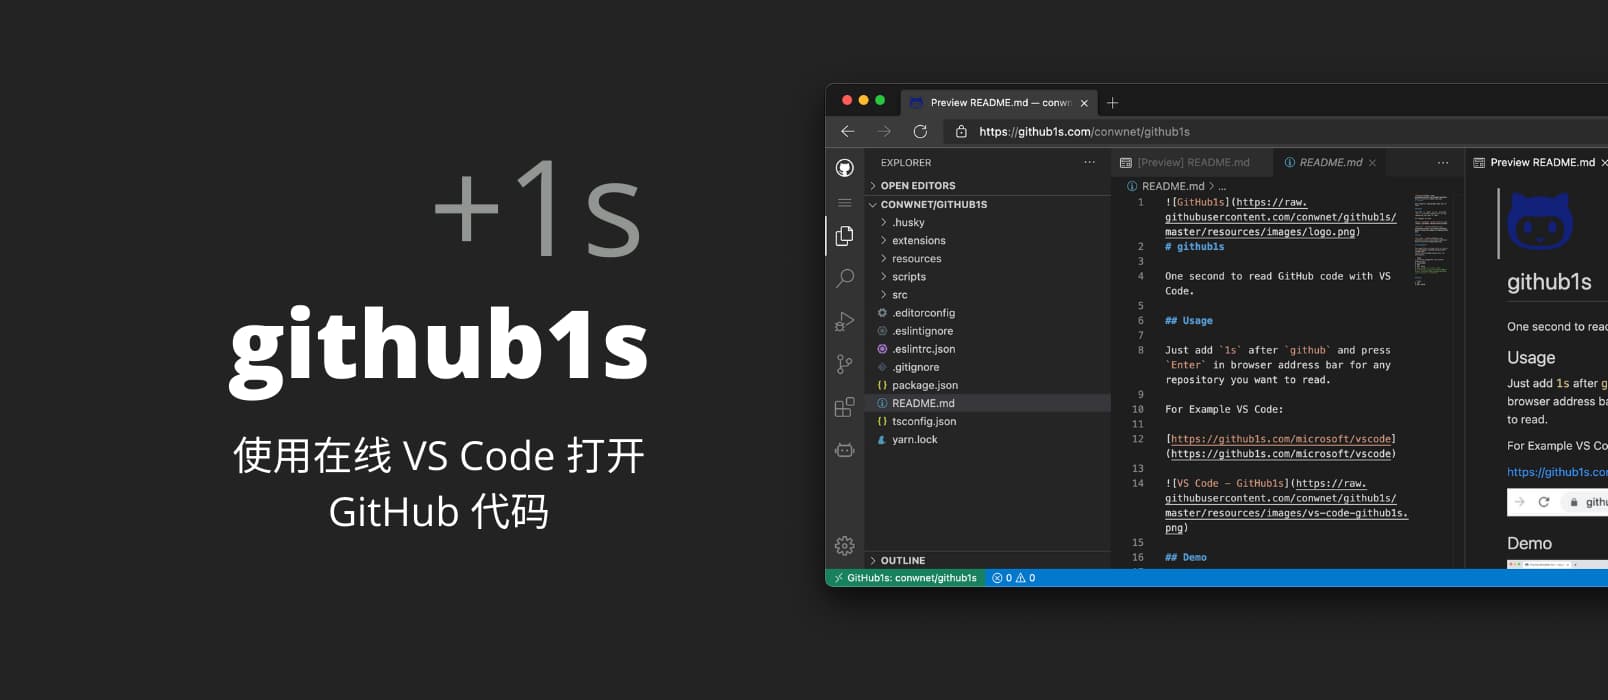 github1s - 为 GitHub +1s，使用在线 VS Code 打开 GitHub 上的代码 1